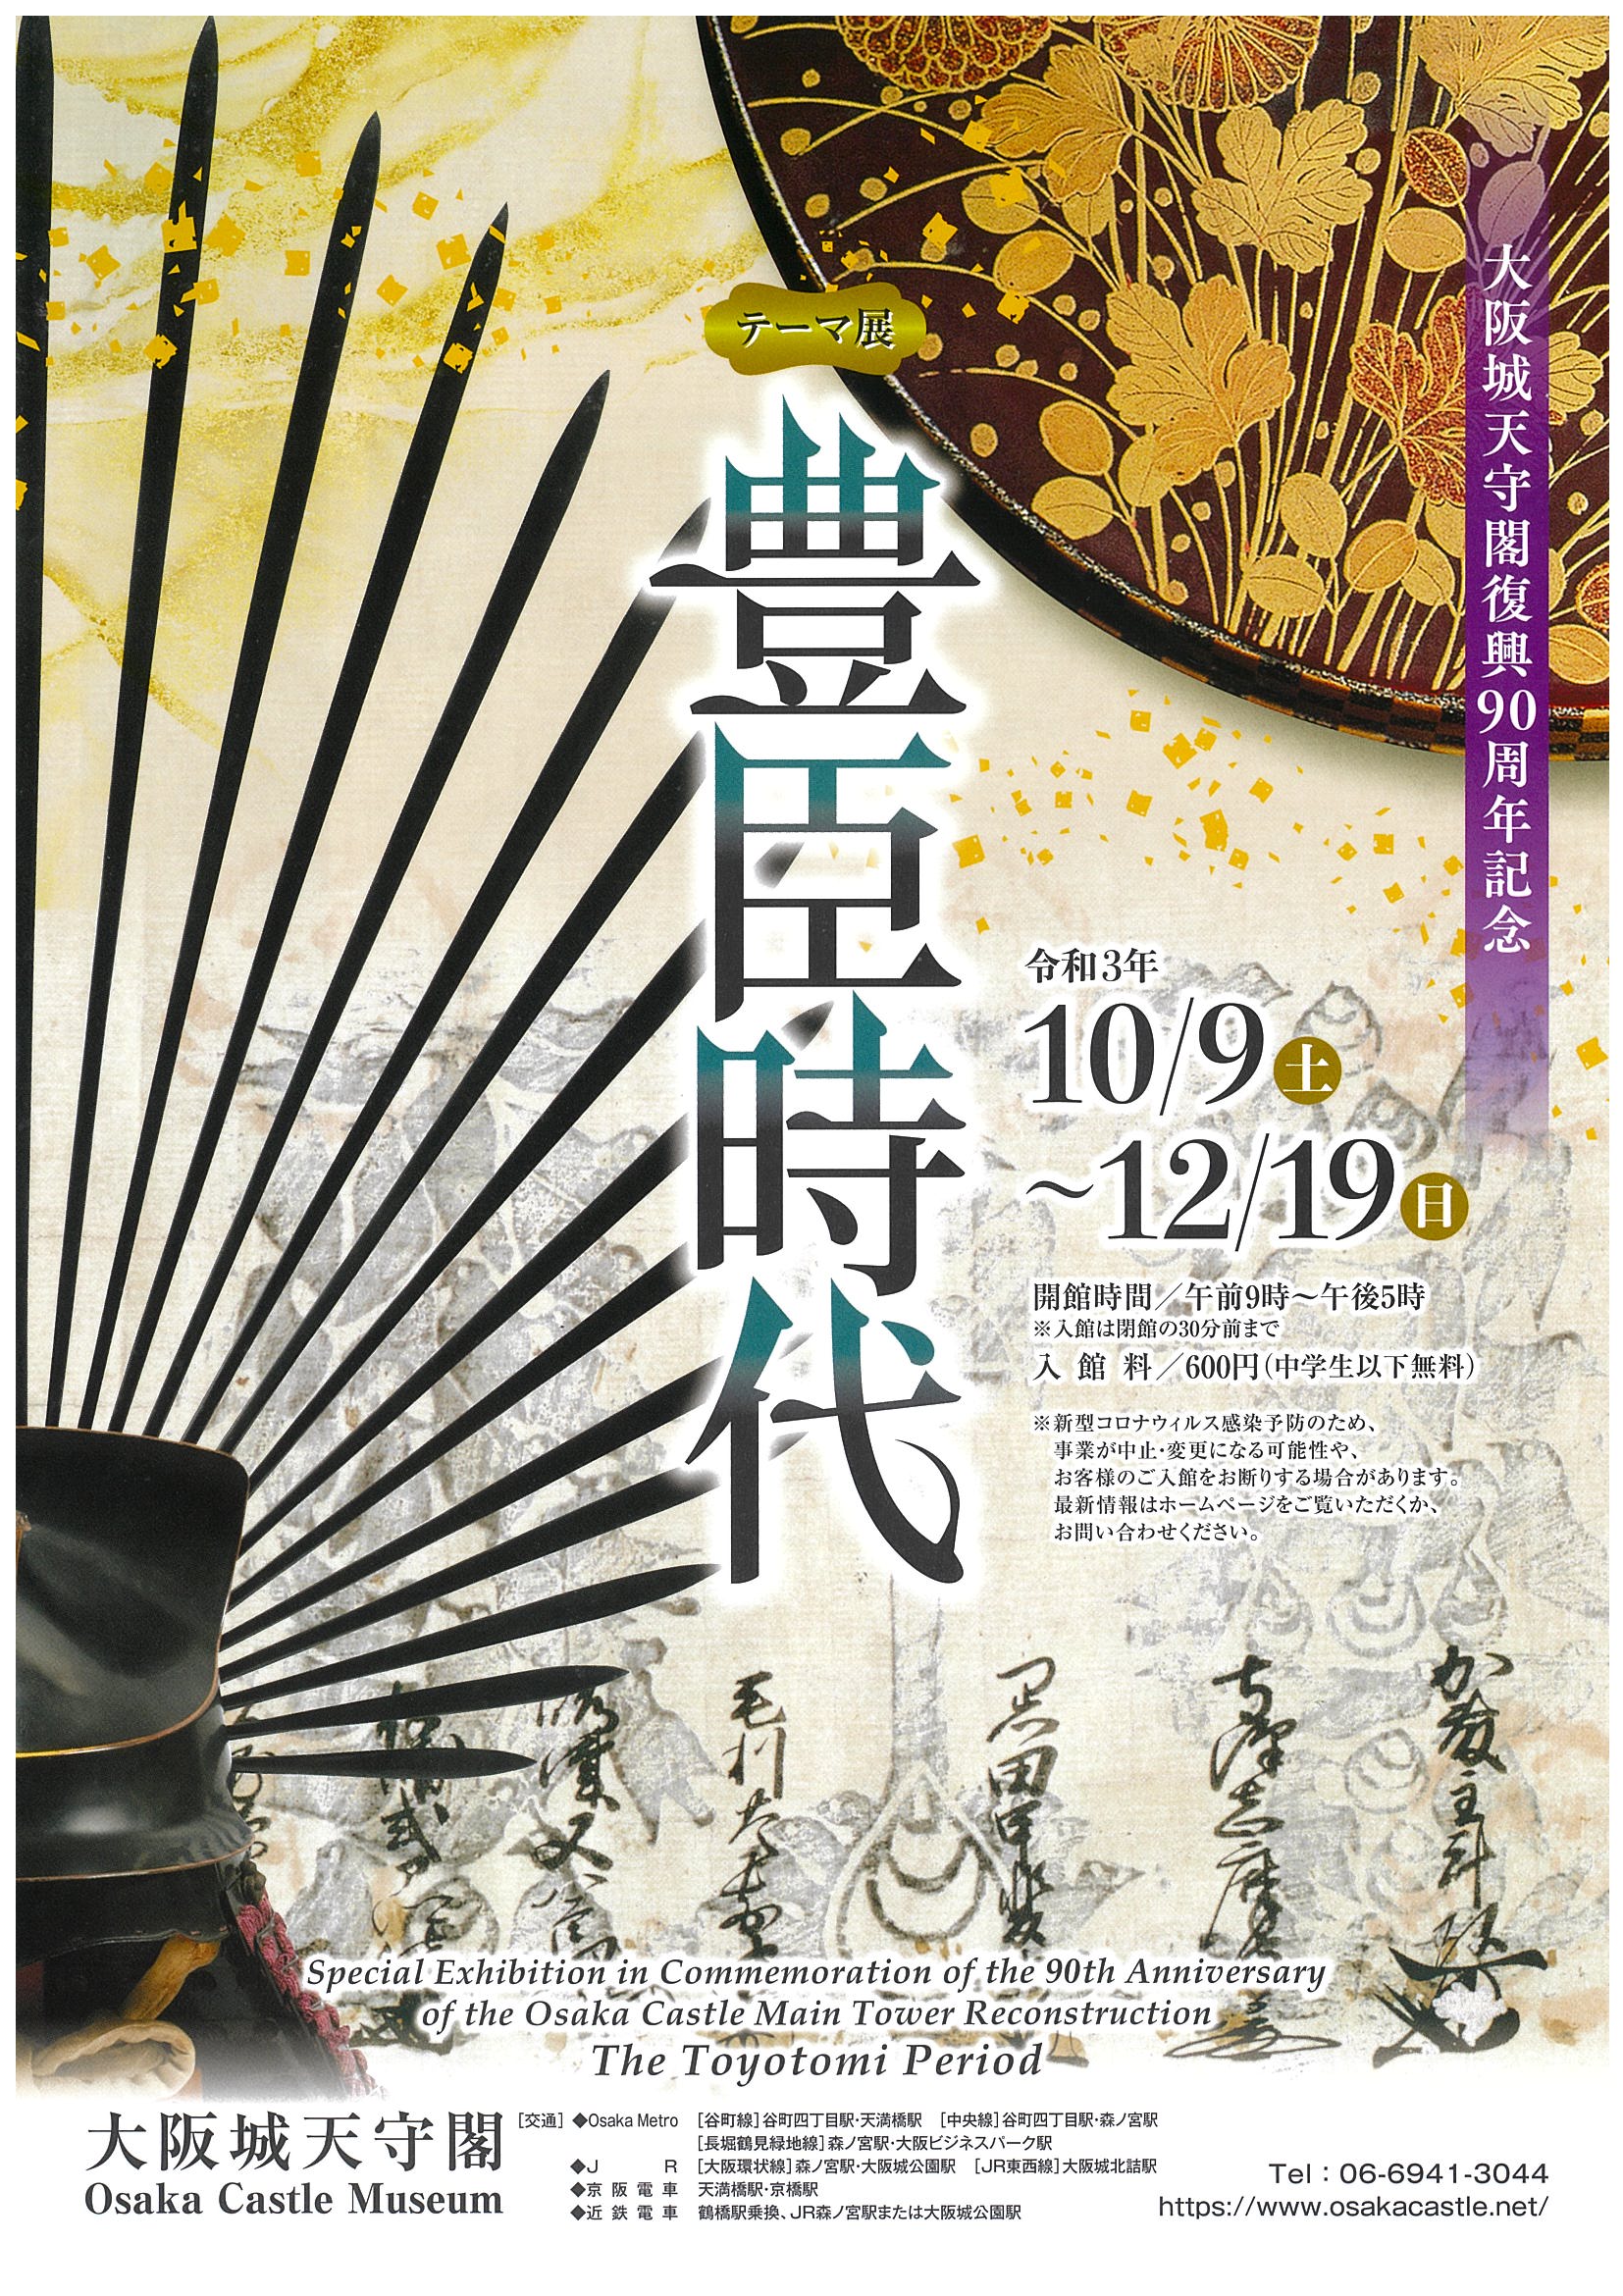 大阪城天守閣復興90周年記念 テーマ展「豊臣時代」